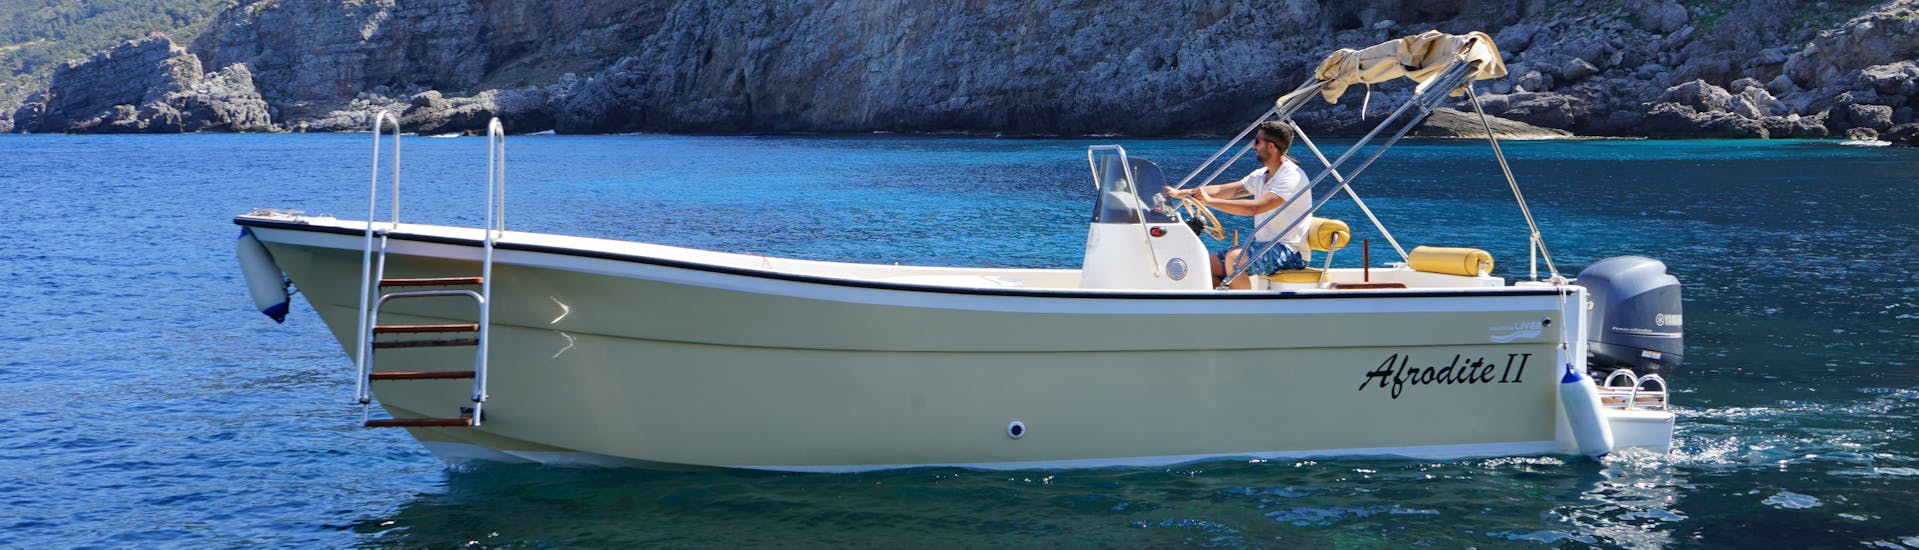 Le bateau Afrodite utilisé pour la Balade privée en bateau aux 8 grottes de Marettimo avec Baignade avec Aegates Rent Boat Marettimo.